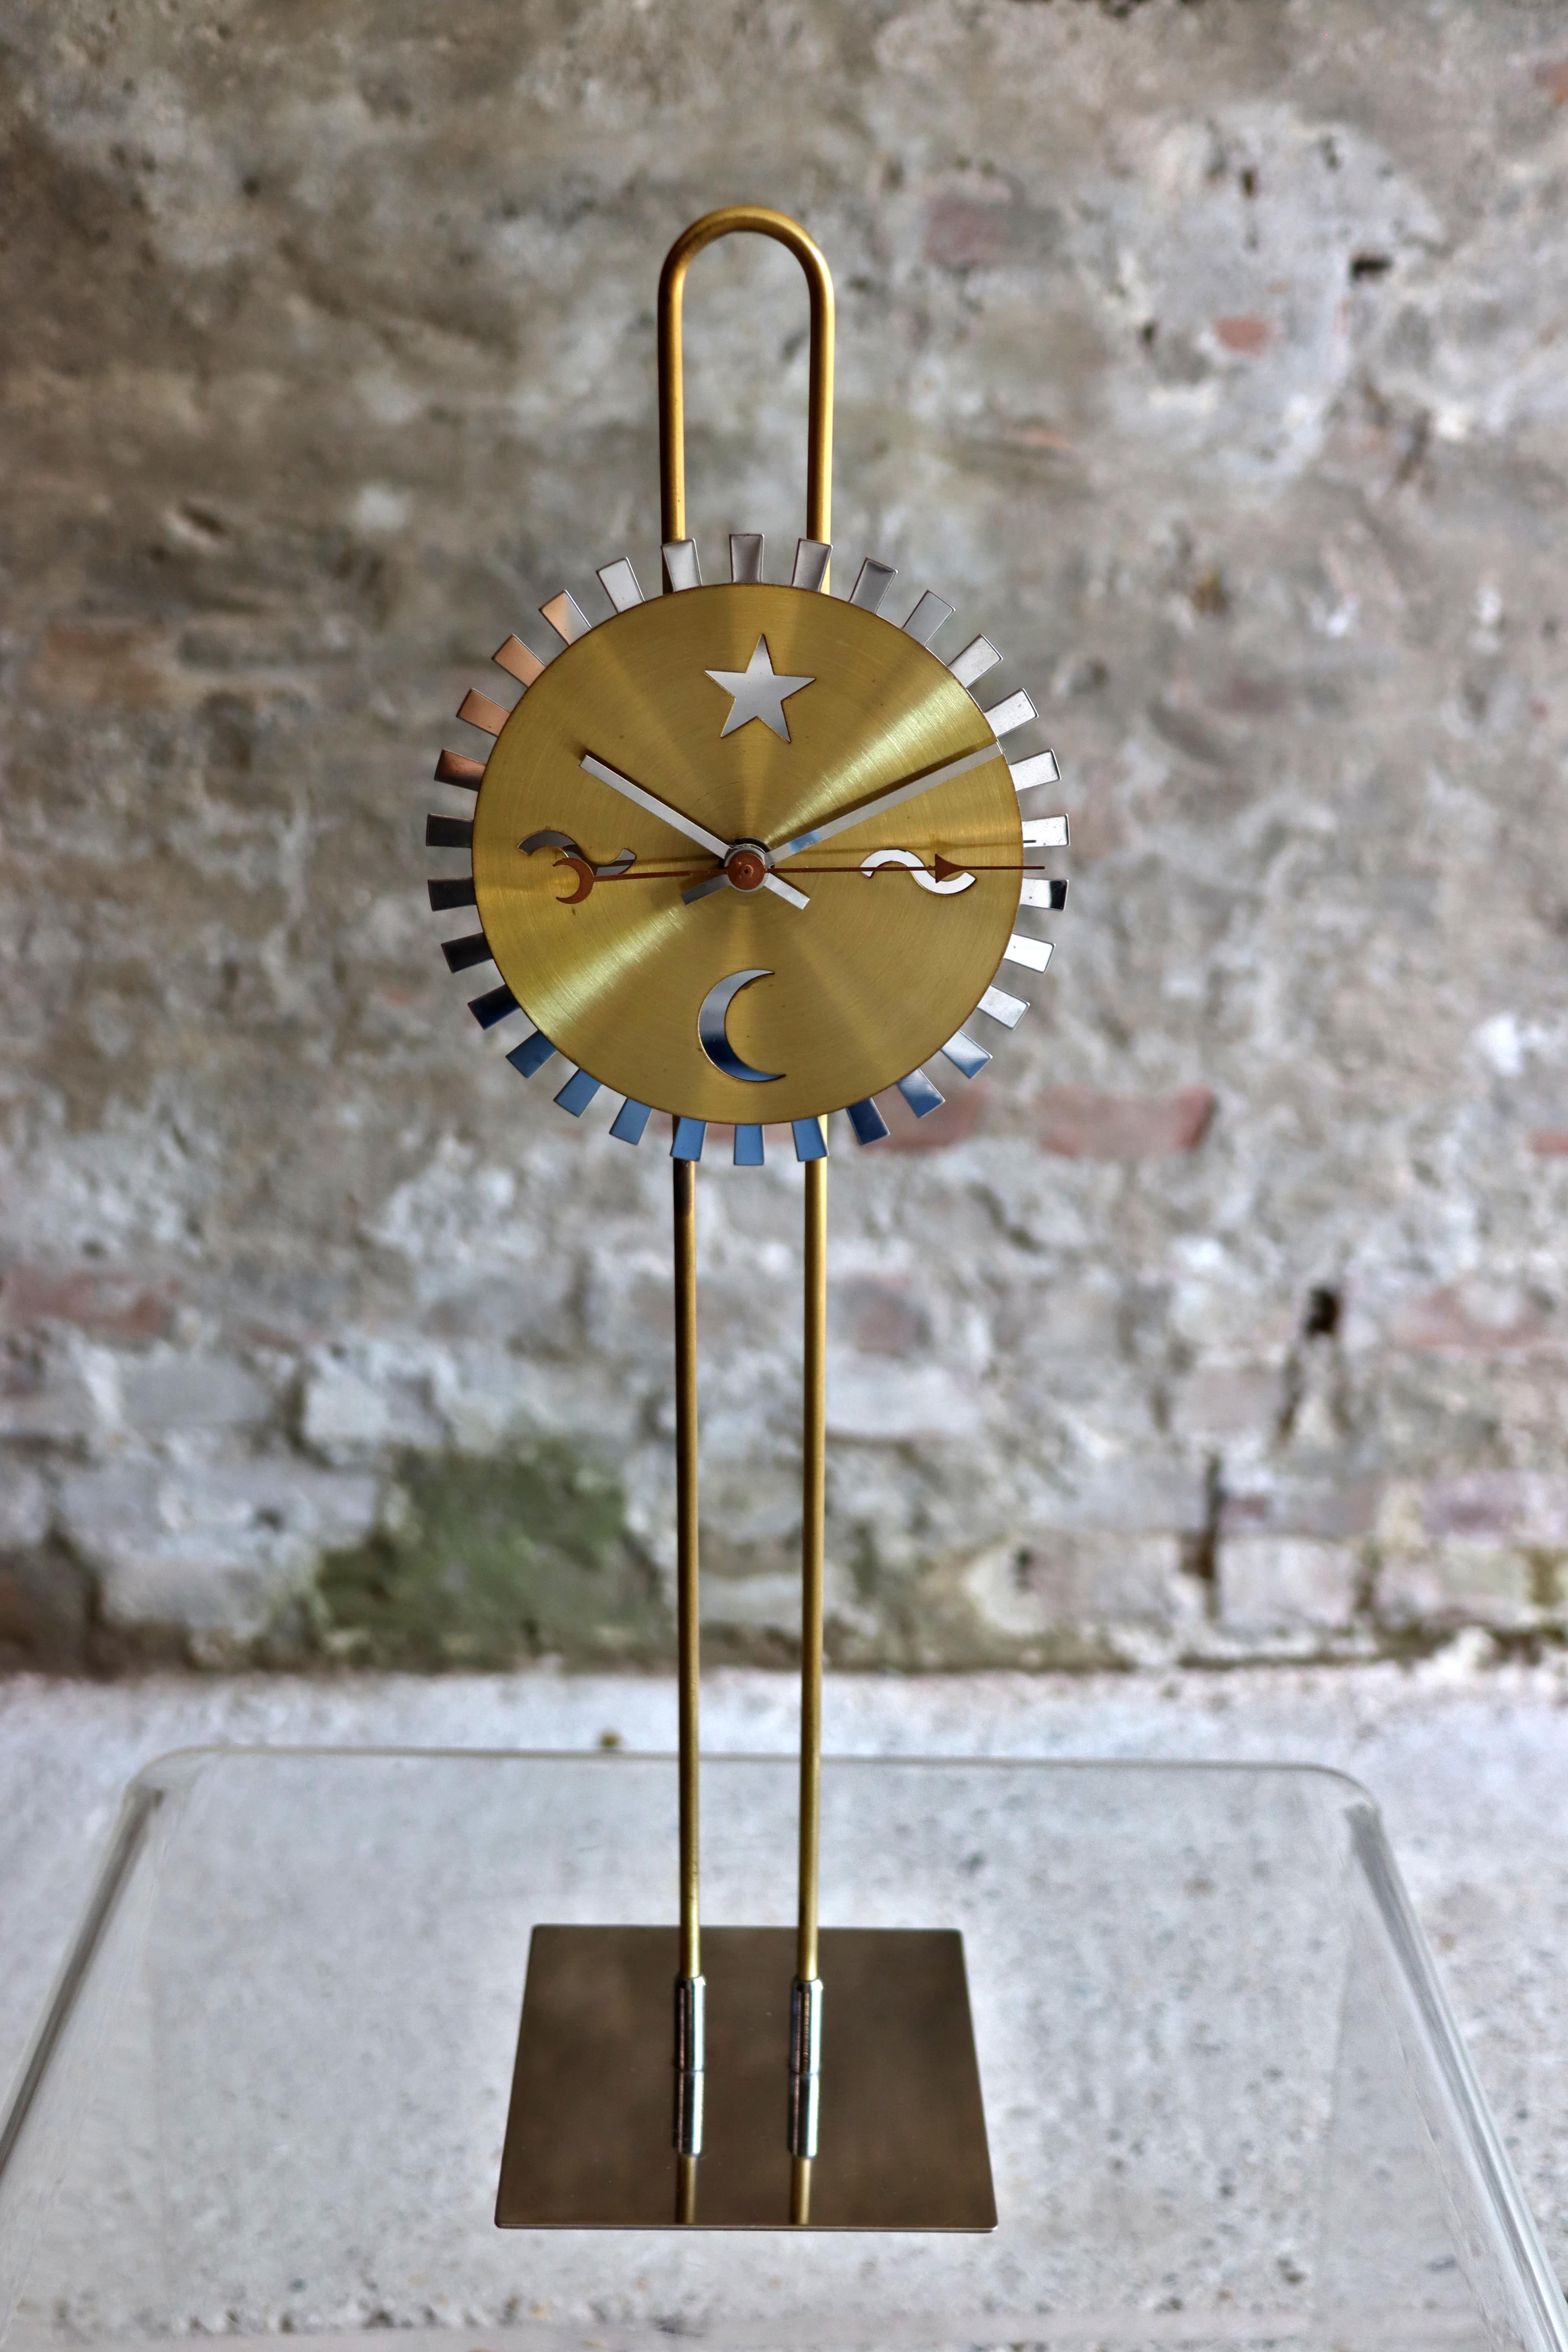 Diese coole Uhr heißt Dilla und ist ein Entwurf von Ehlén Johansson für IKEA. Es wurde erstmals im Katalog von 1995 aufgeführt. Er ist aus Messing und massivem Edelstahl gefertigt. Die Höhe der Uhr ist verstellbar.

